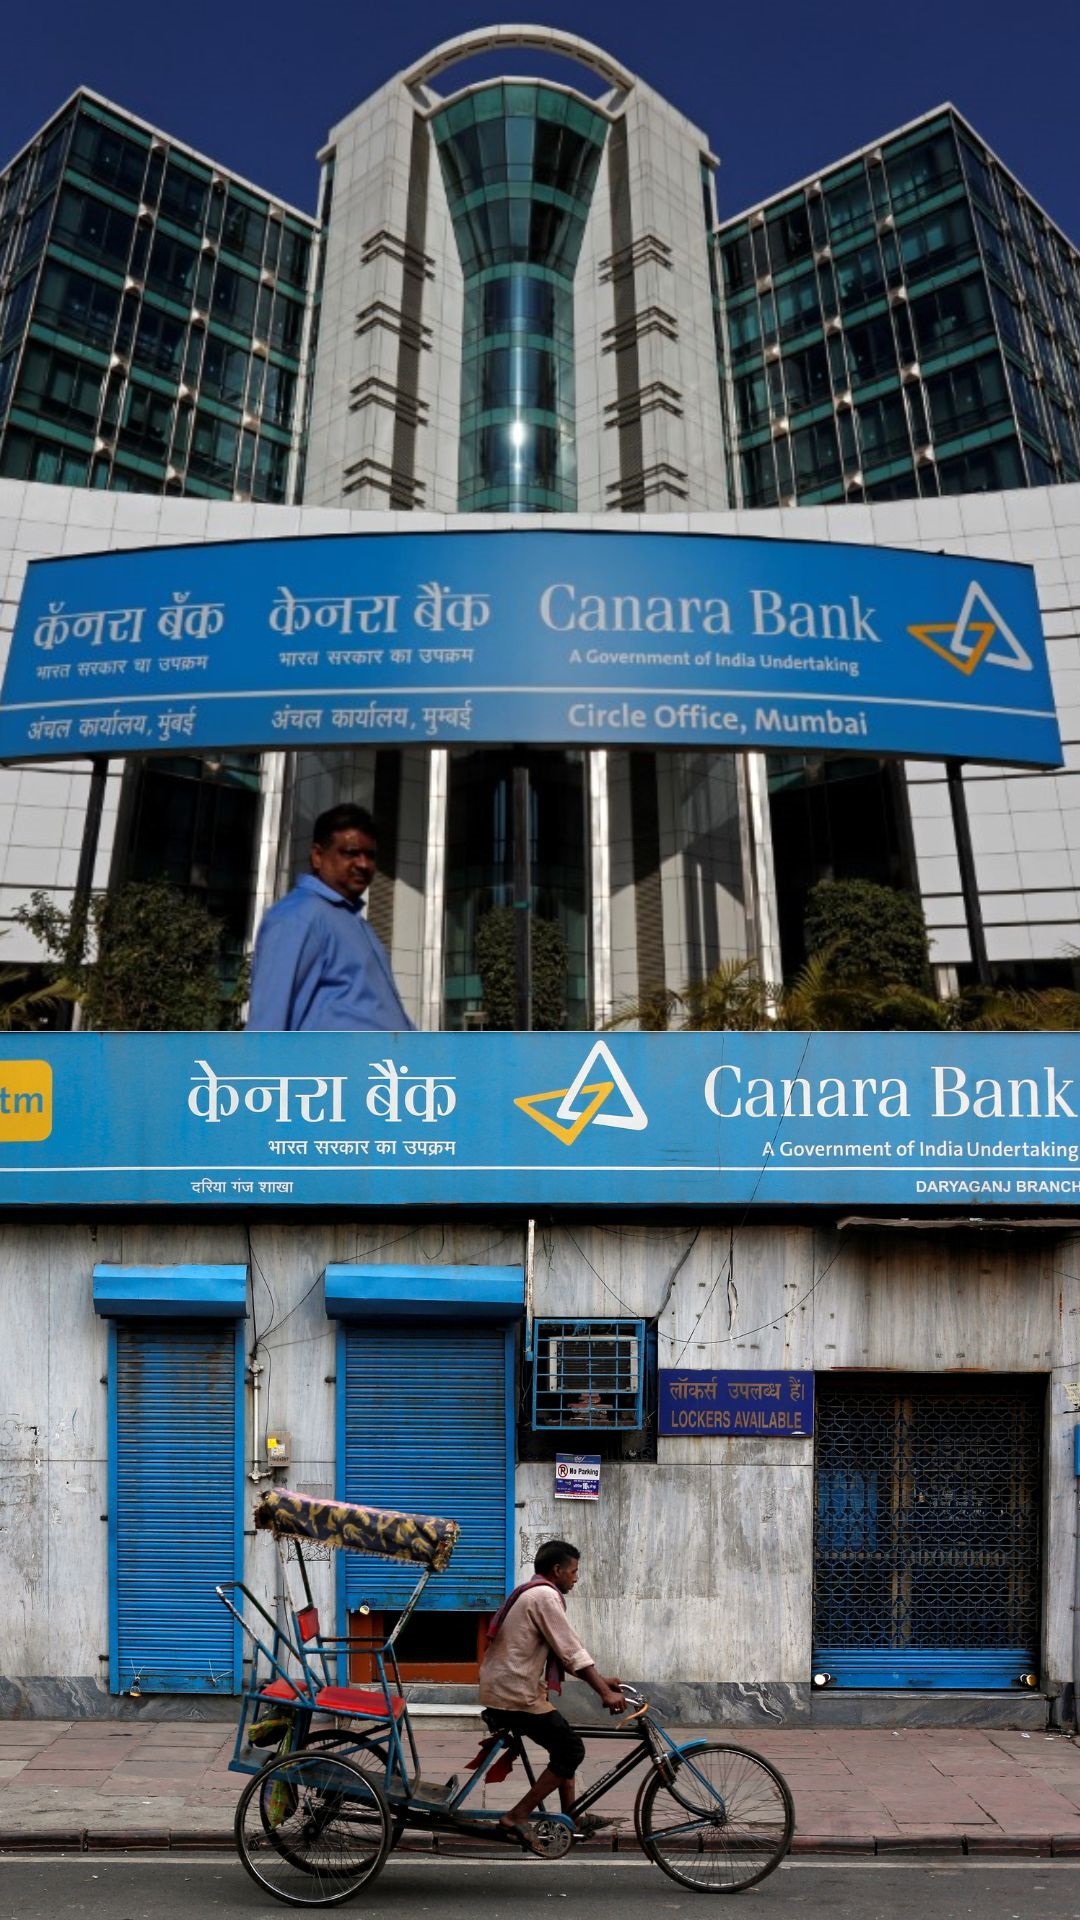 Canara Bank ने आज से बढ़ा दिया ब्याज,अगर ₹40 लाख है होम लोन तो अब EMI कितना ज्यादा चुकाएंगे आप?